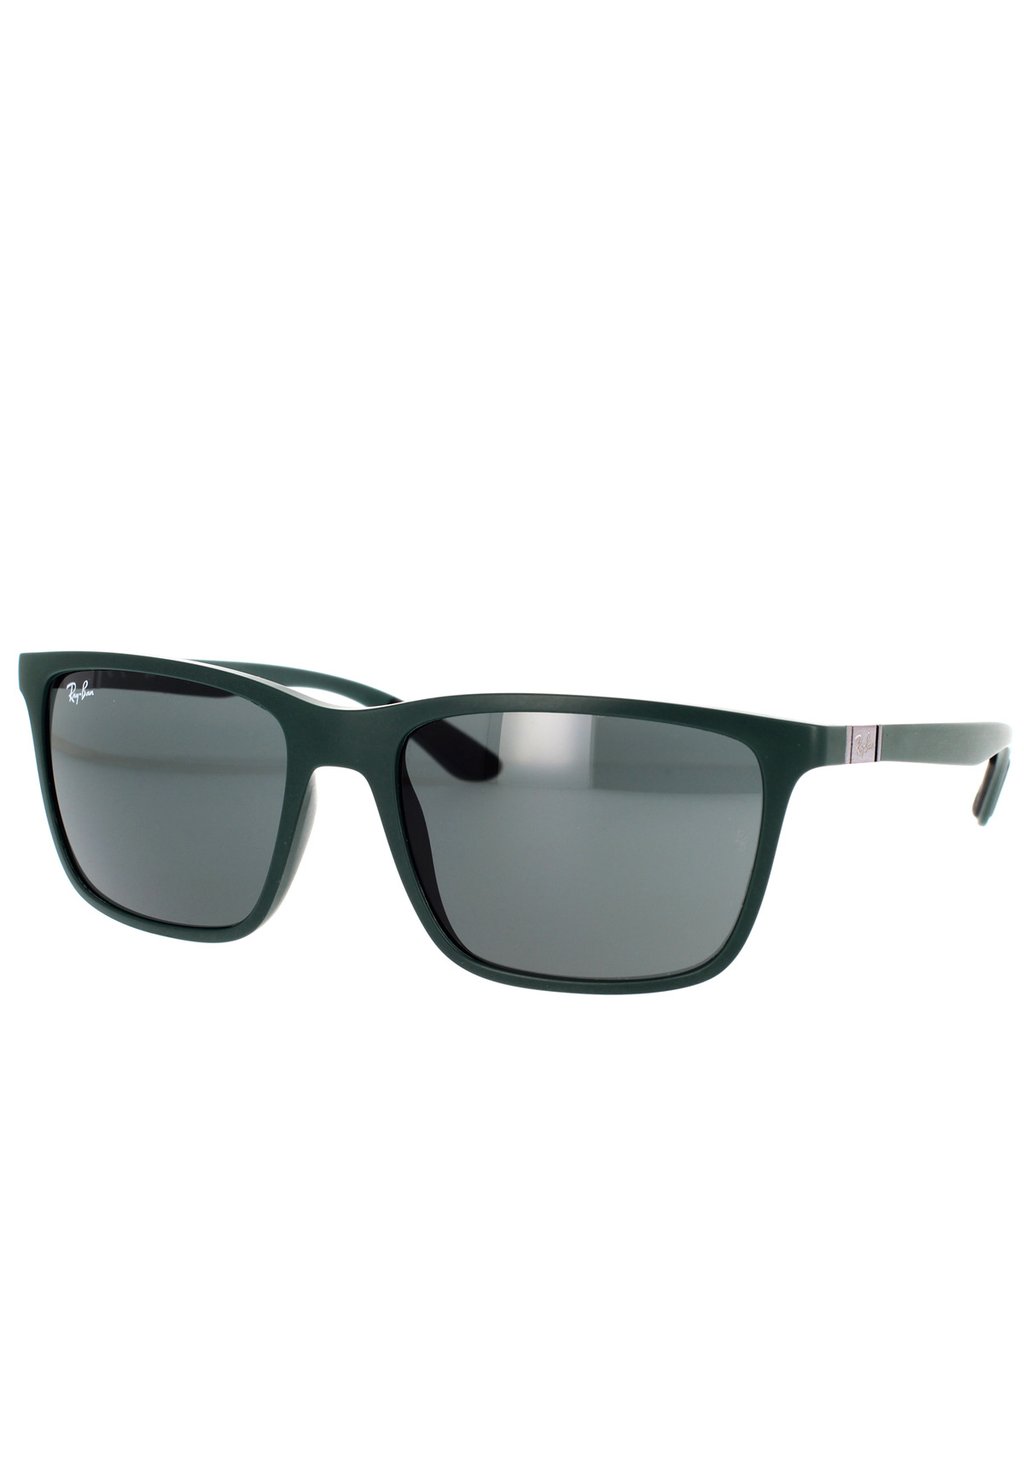 горошек green ray 450 г Солнцезащитные очки Ray-Ban, зеленые